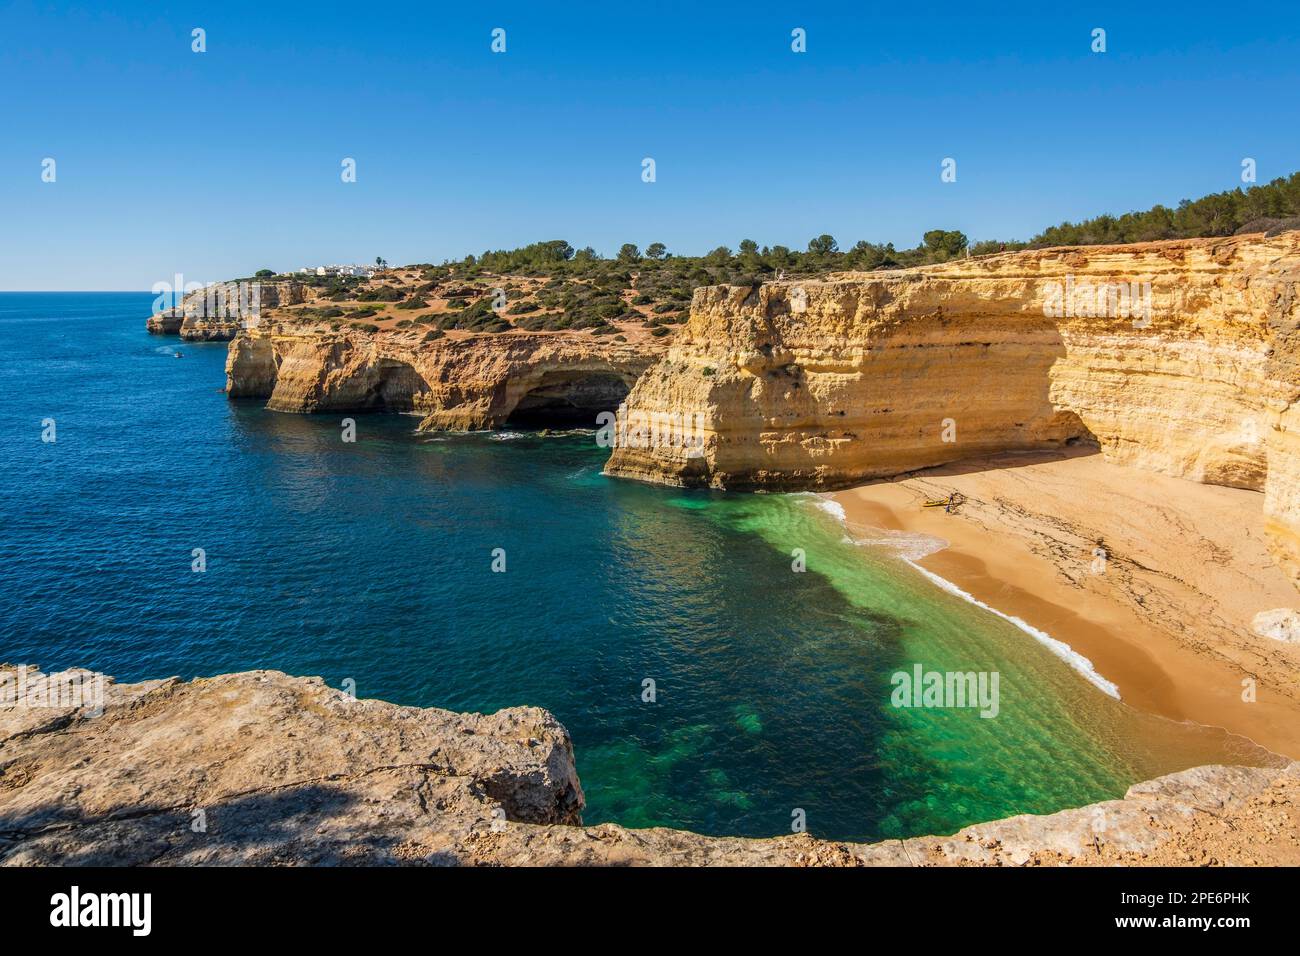 Falaises et formation de rochers à la plage de Corredoura, Algarve, Portugal Banque D'Images